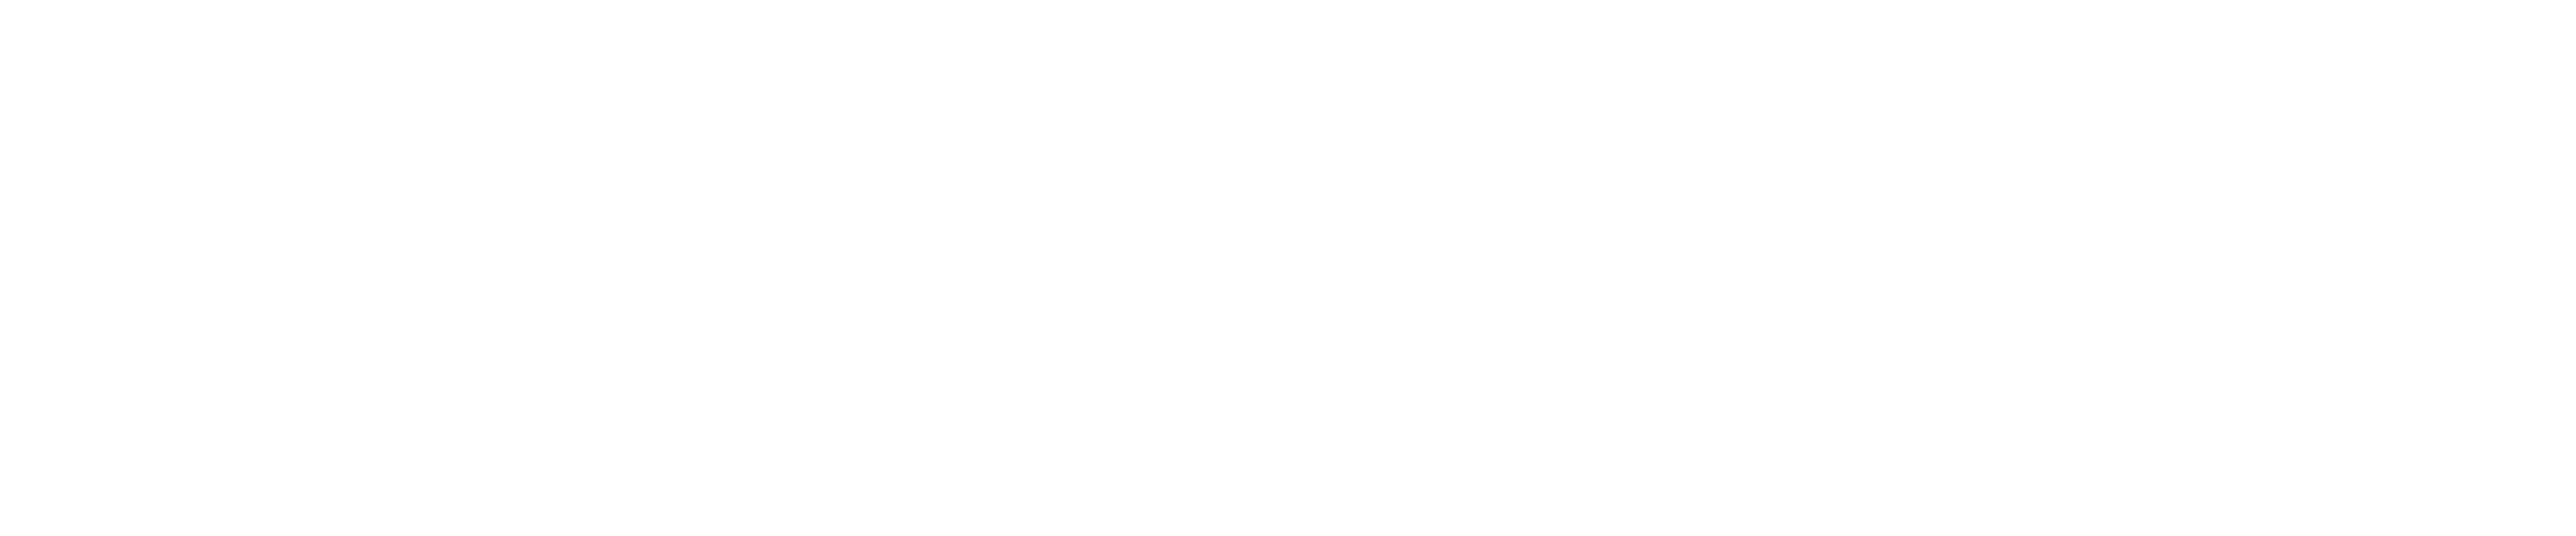 Arca Continental Digital